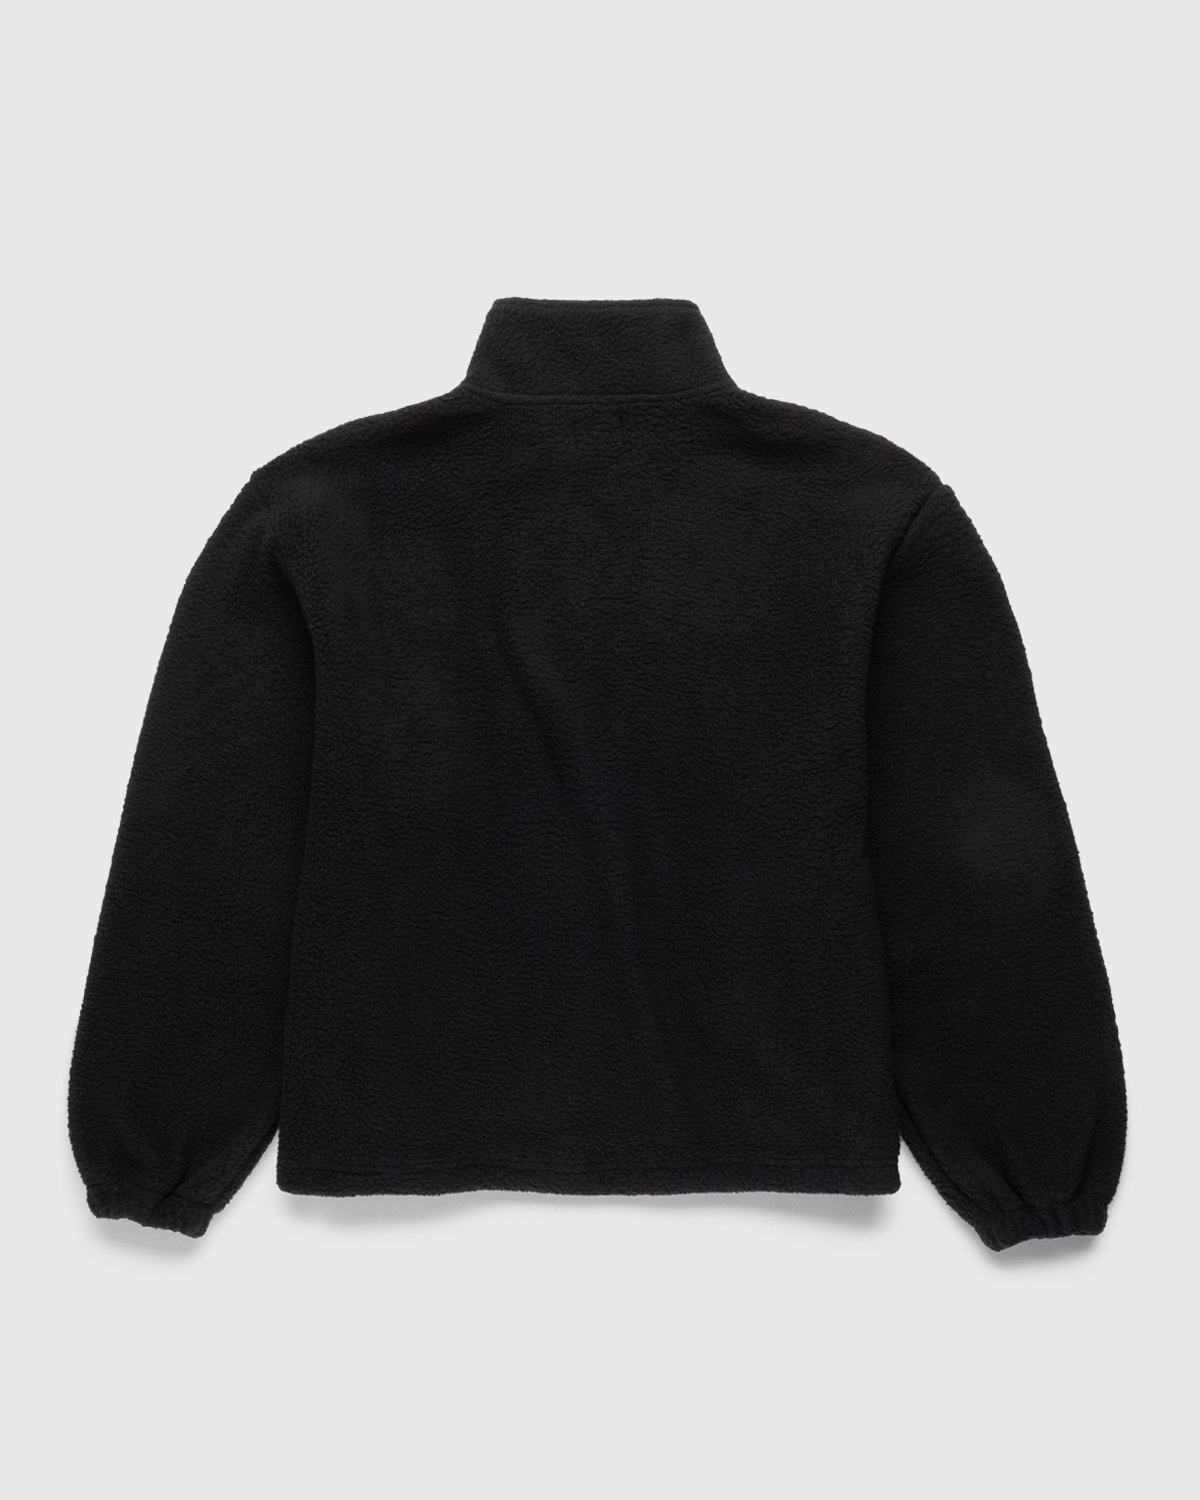 Patta – Sherling Fleece Jacket Black - Outerwear - Black - Image 2